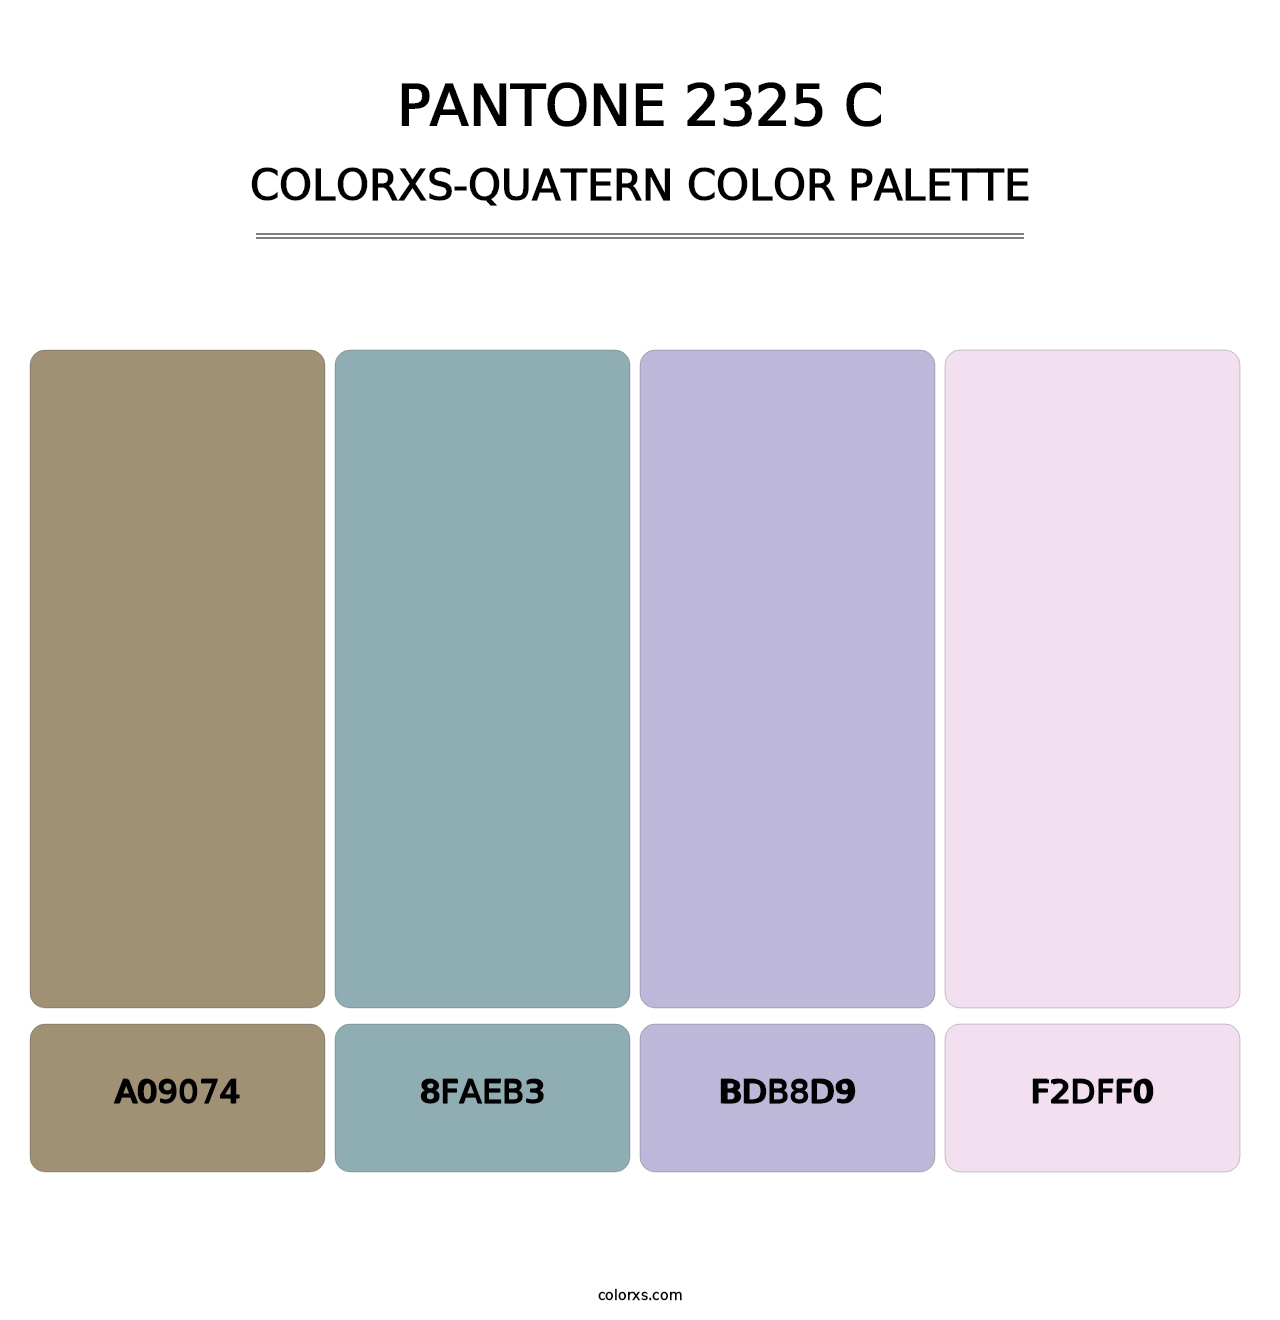 PANTONE 2325 C - Colorxs Quatern Palette